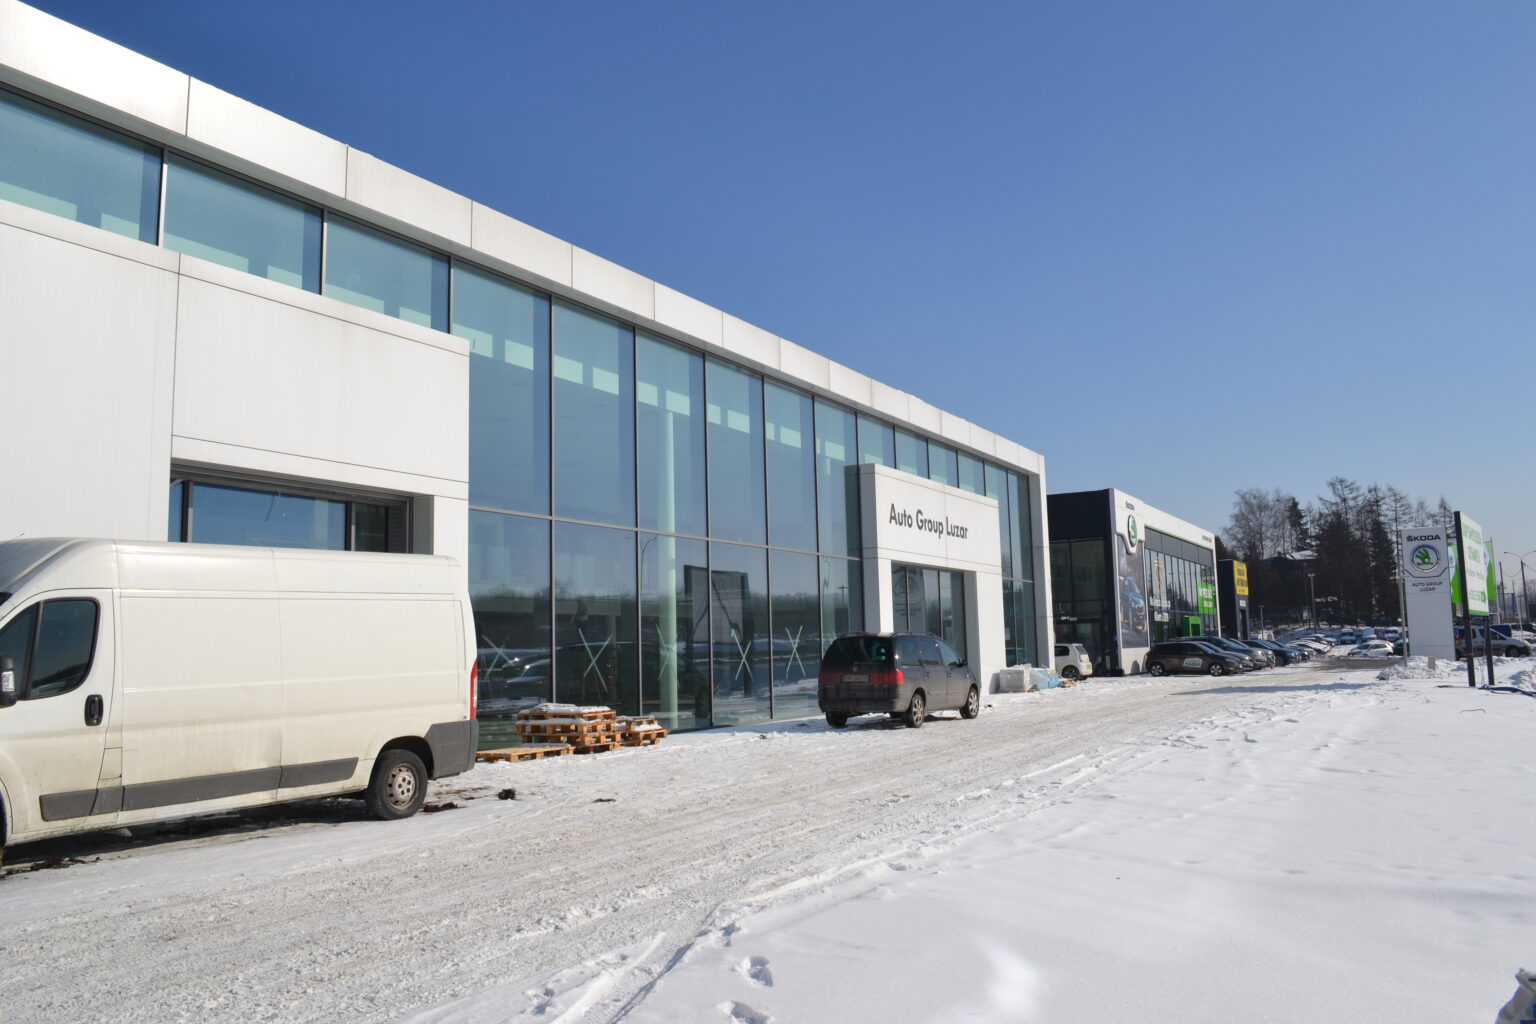 Slajder Salon i Serwis Volkswagen Auto Group Luzar